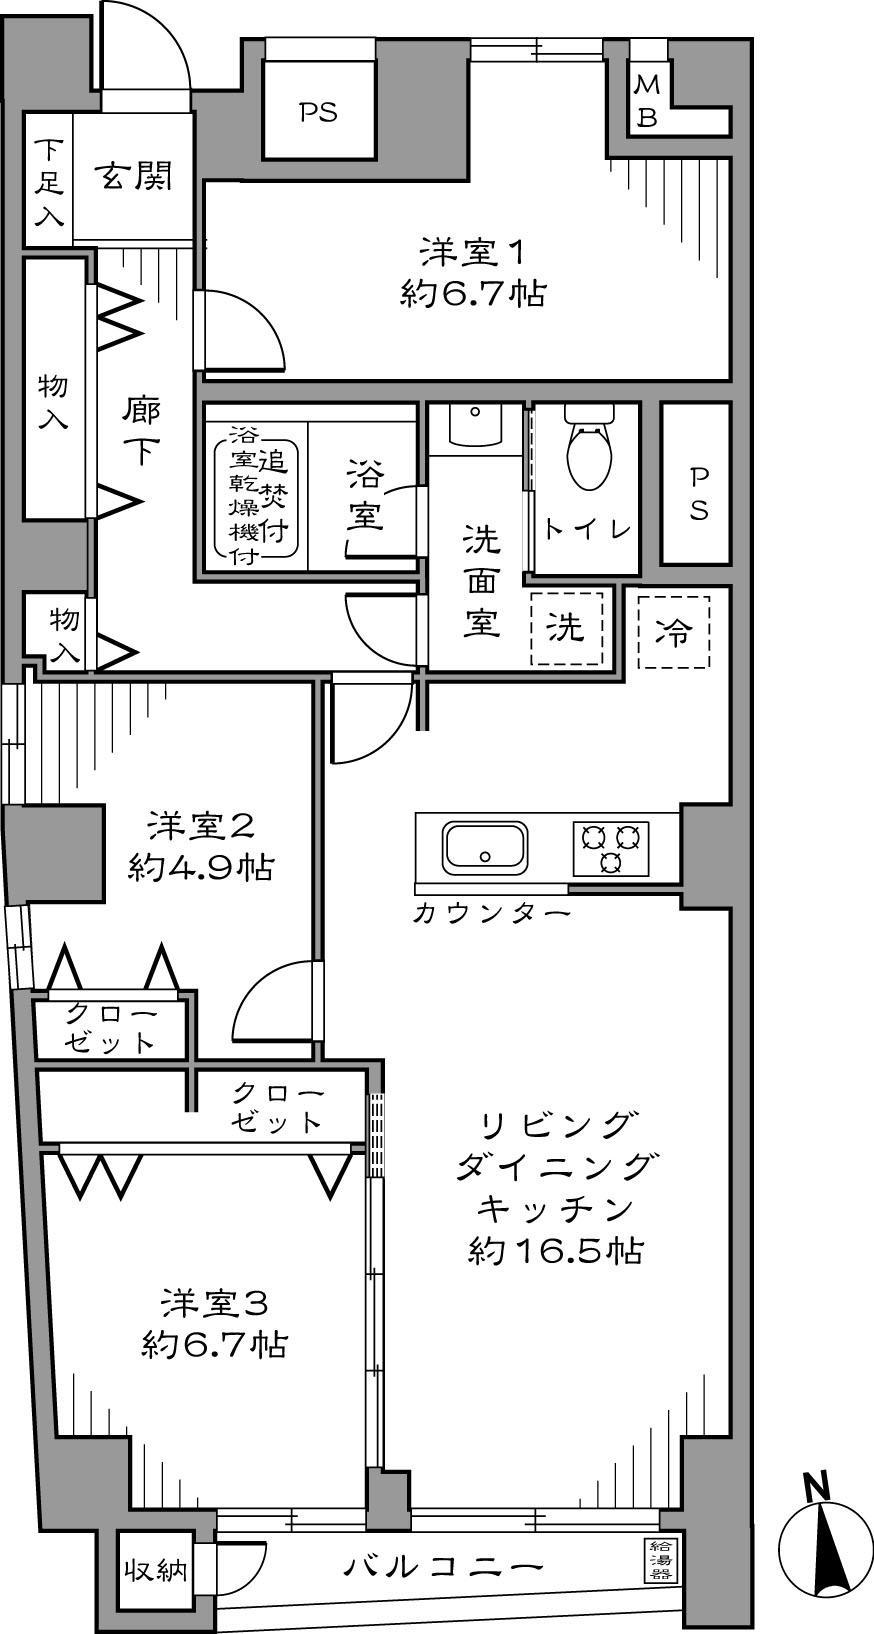 Floor plan. 3LDK Price 54,800,000 yen Site area 84.16 sq m